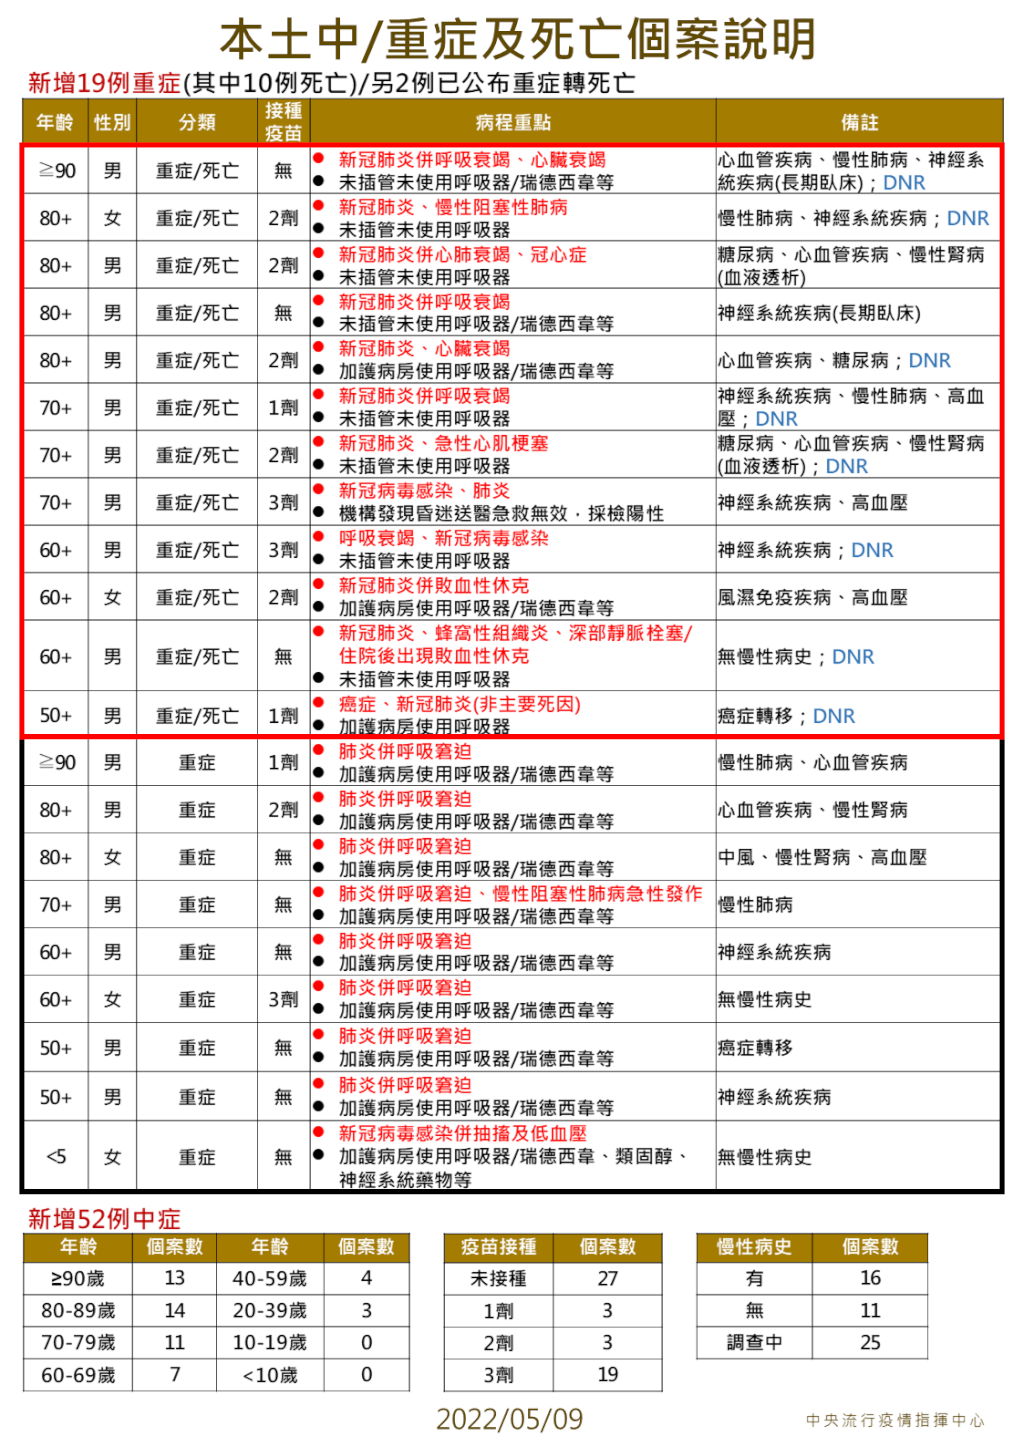 5/9台灣本土+40263　死亡+12　入境居家檢疫即起縮短為「7+7」